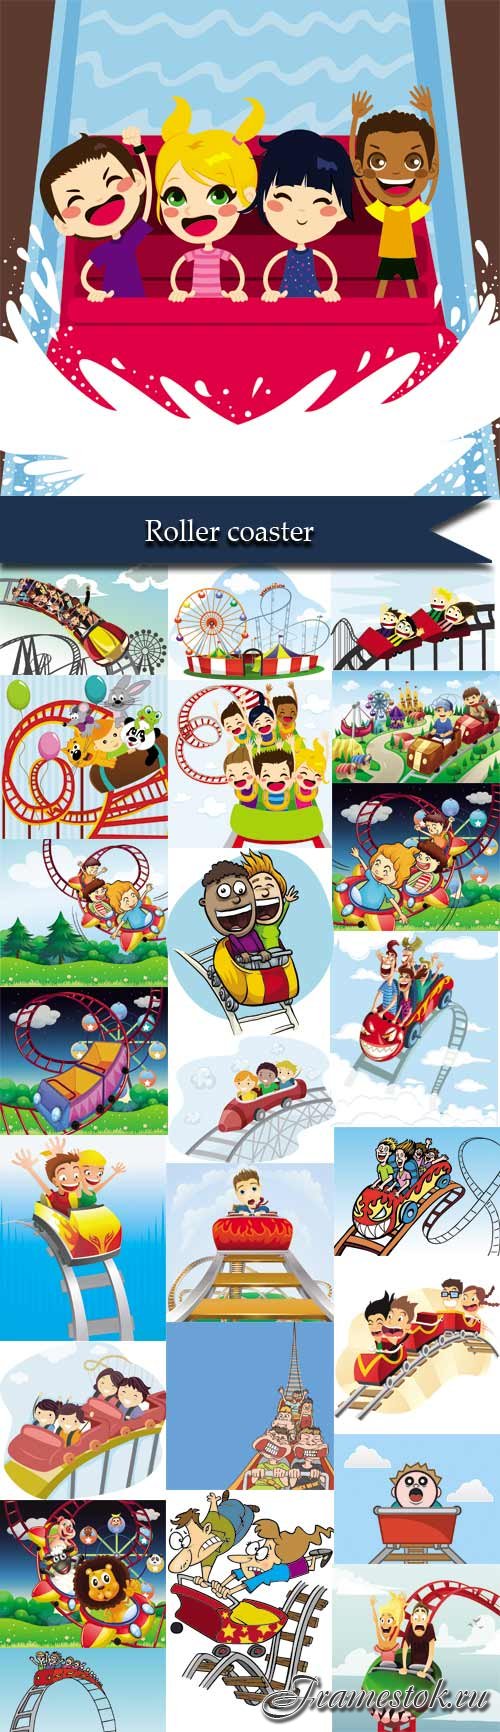 Cartoons children on a roller coaster